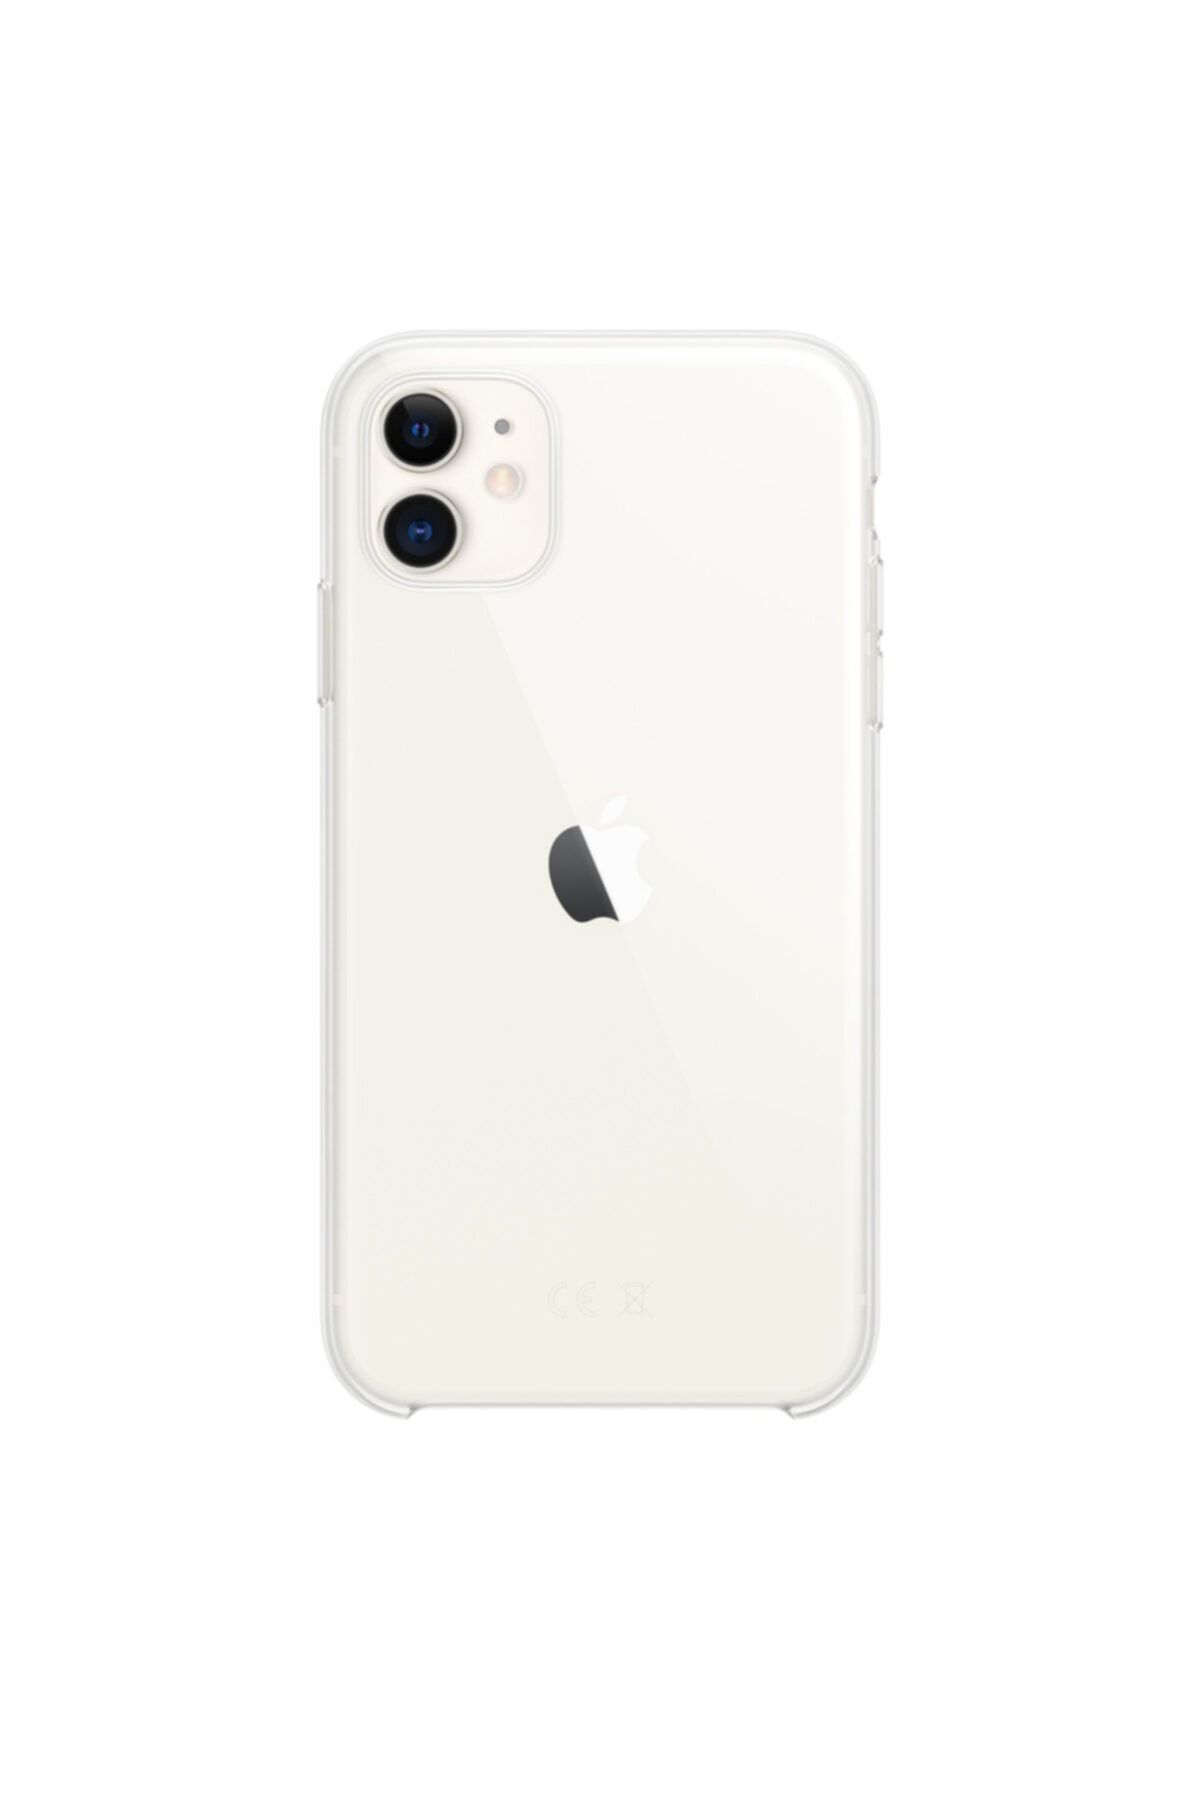 Apple Iphone 11 Şeffaf Kılıf - Mwvg2zm/a